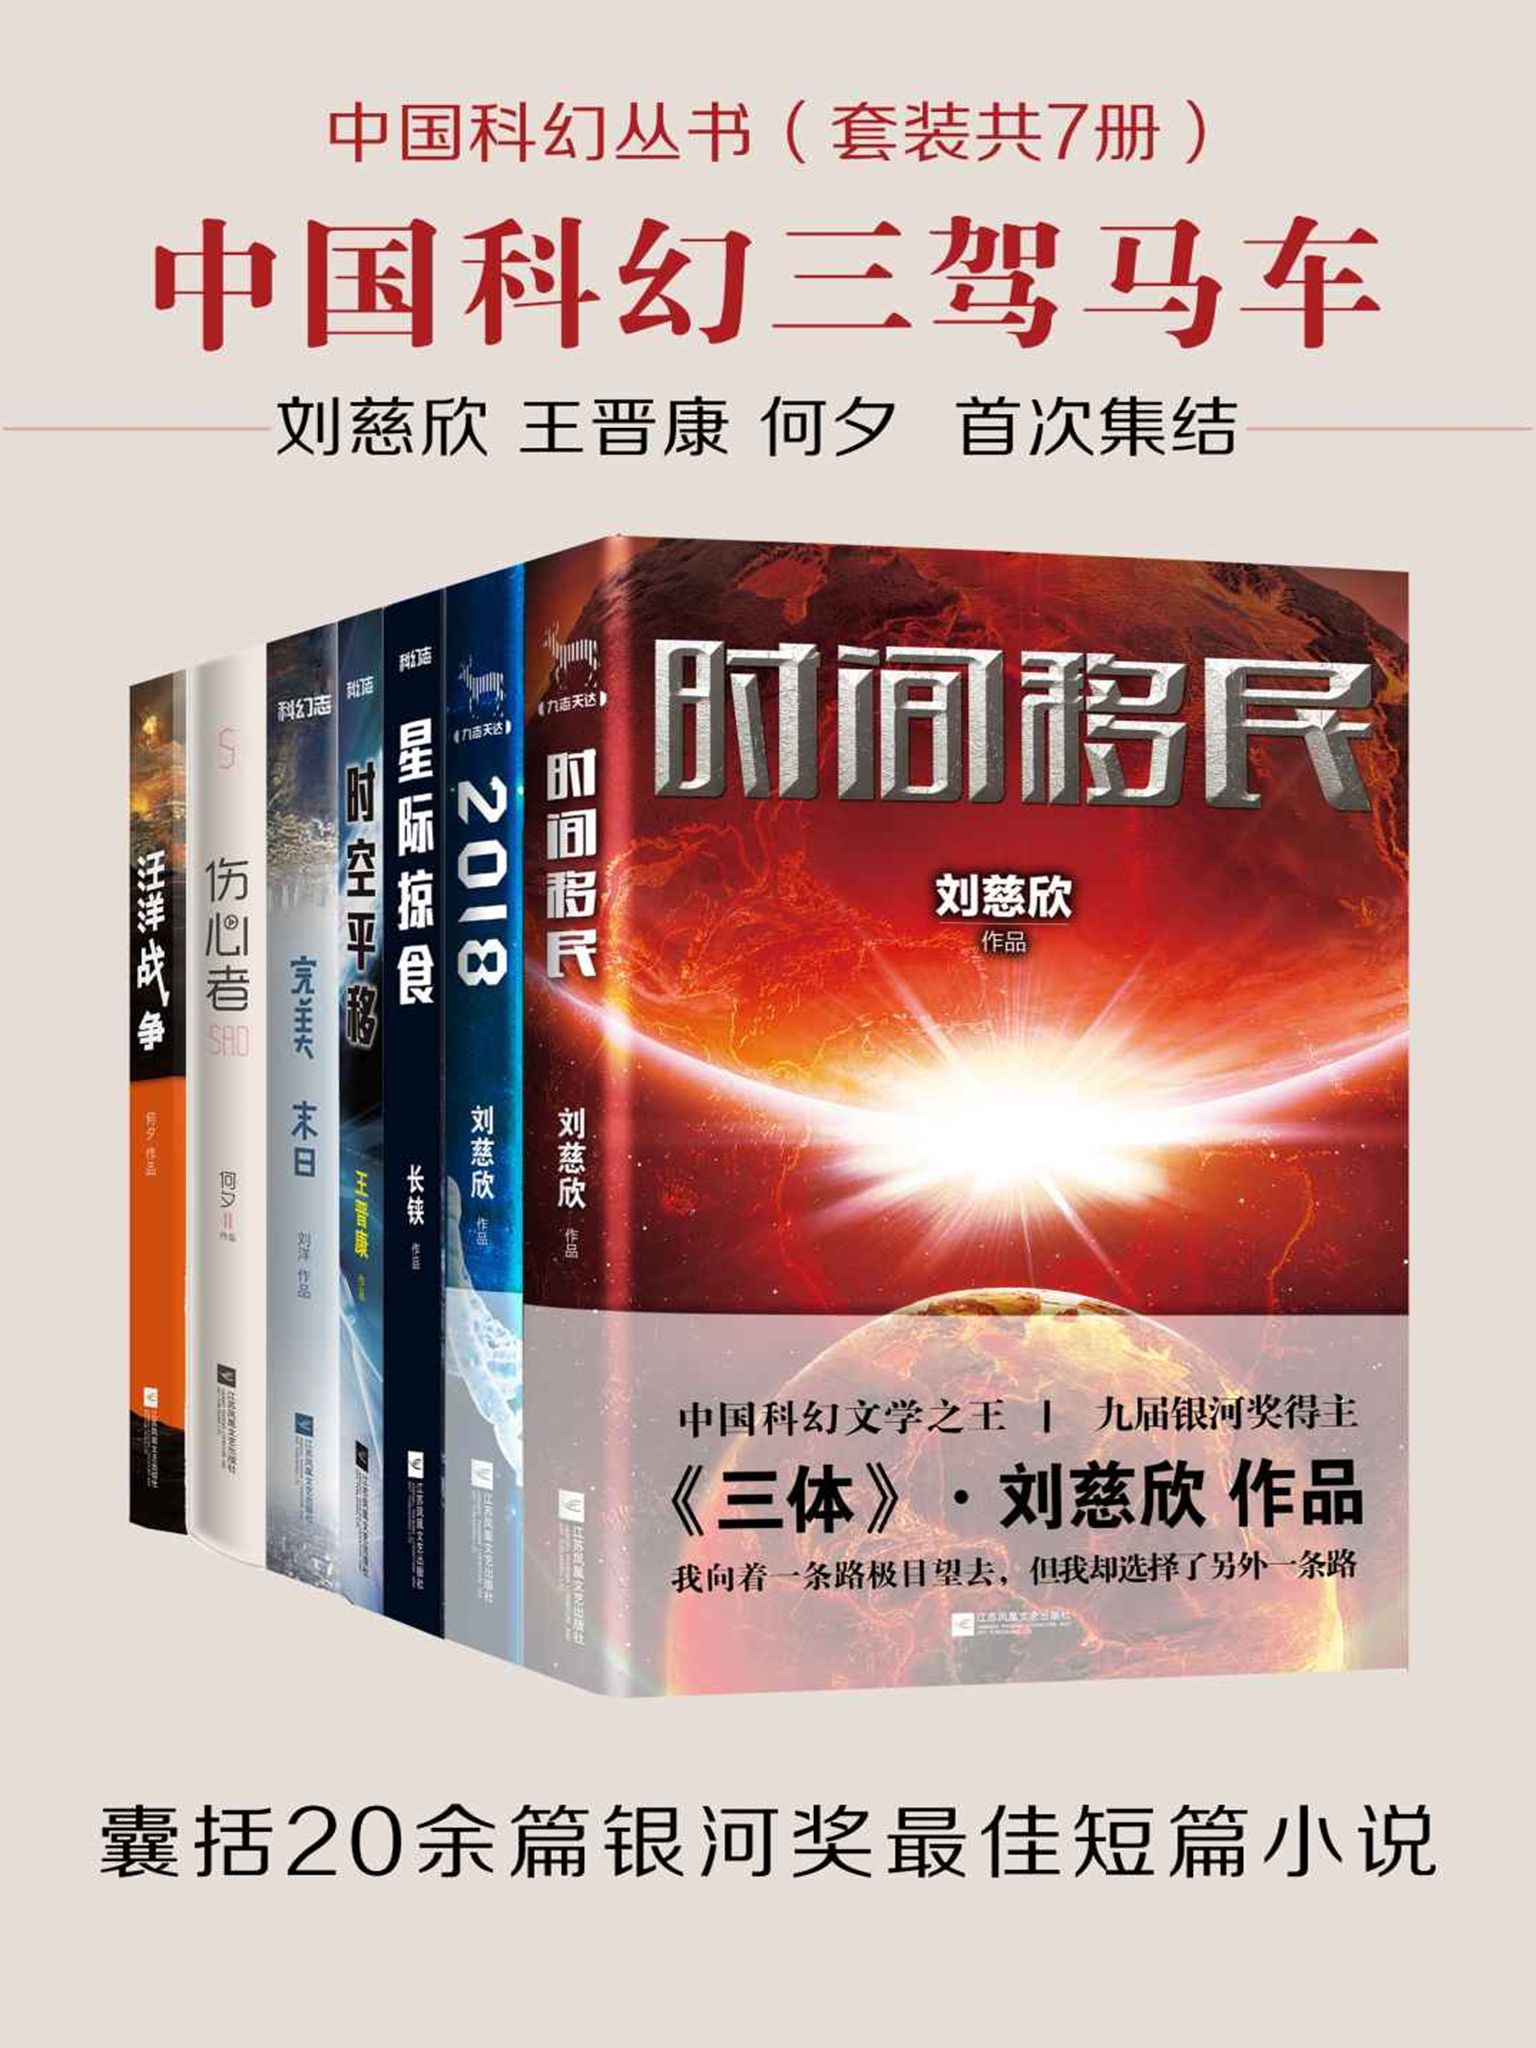 [小说类] [科幻恐怖] [其它] [网盘下载] 《中国科幻丛书（套装共7册）》[Pdf.Epub.Mobi.Azw3]